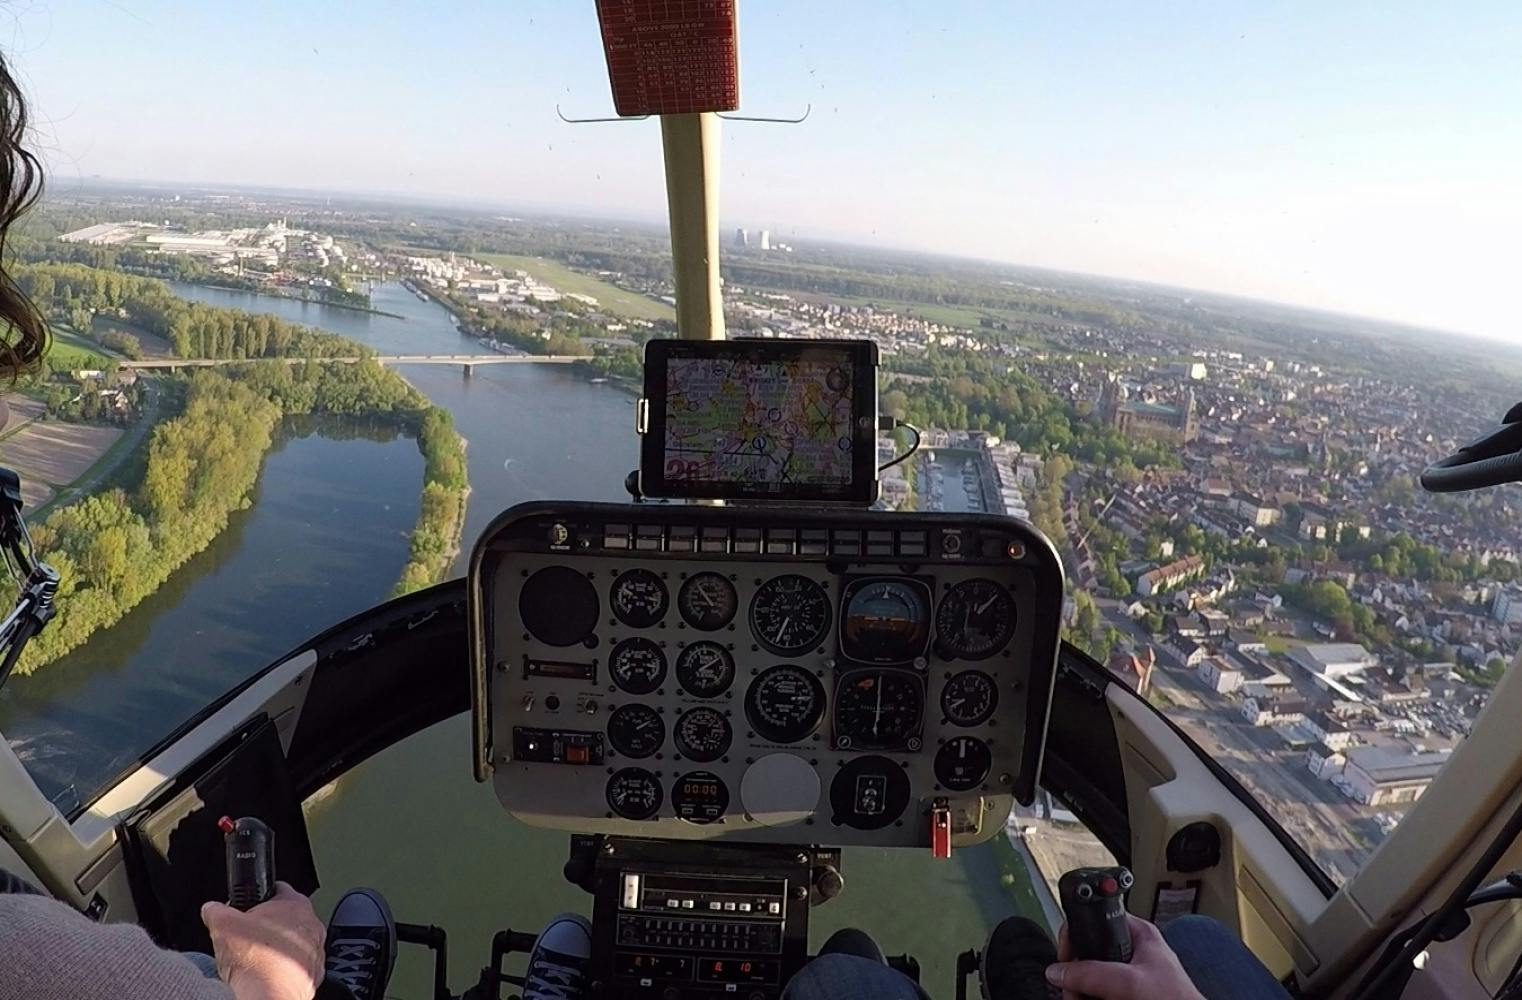 Rundflug mit Hubschrauber | ca. 30 Min. Sightseeing von oben